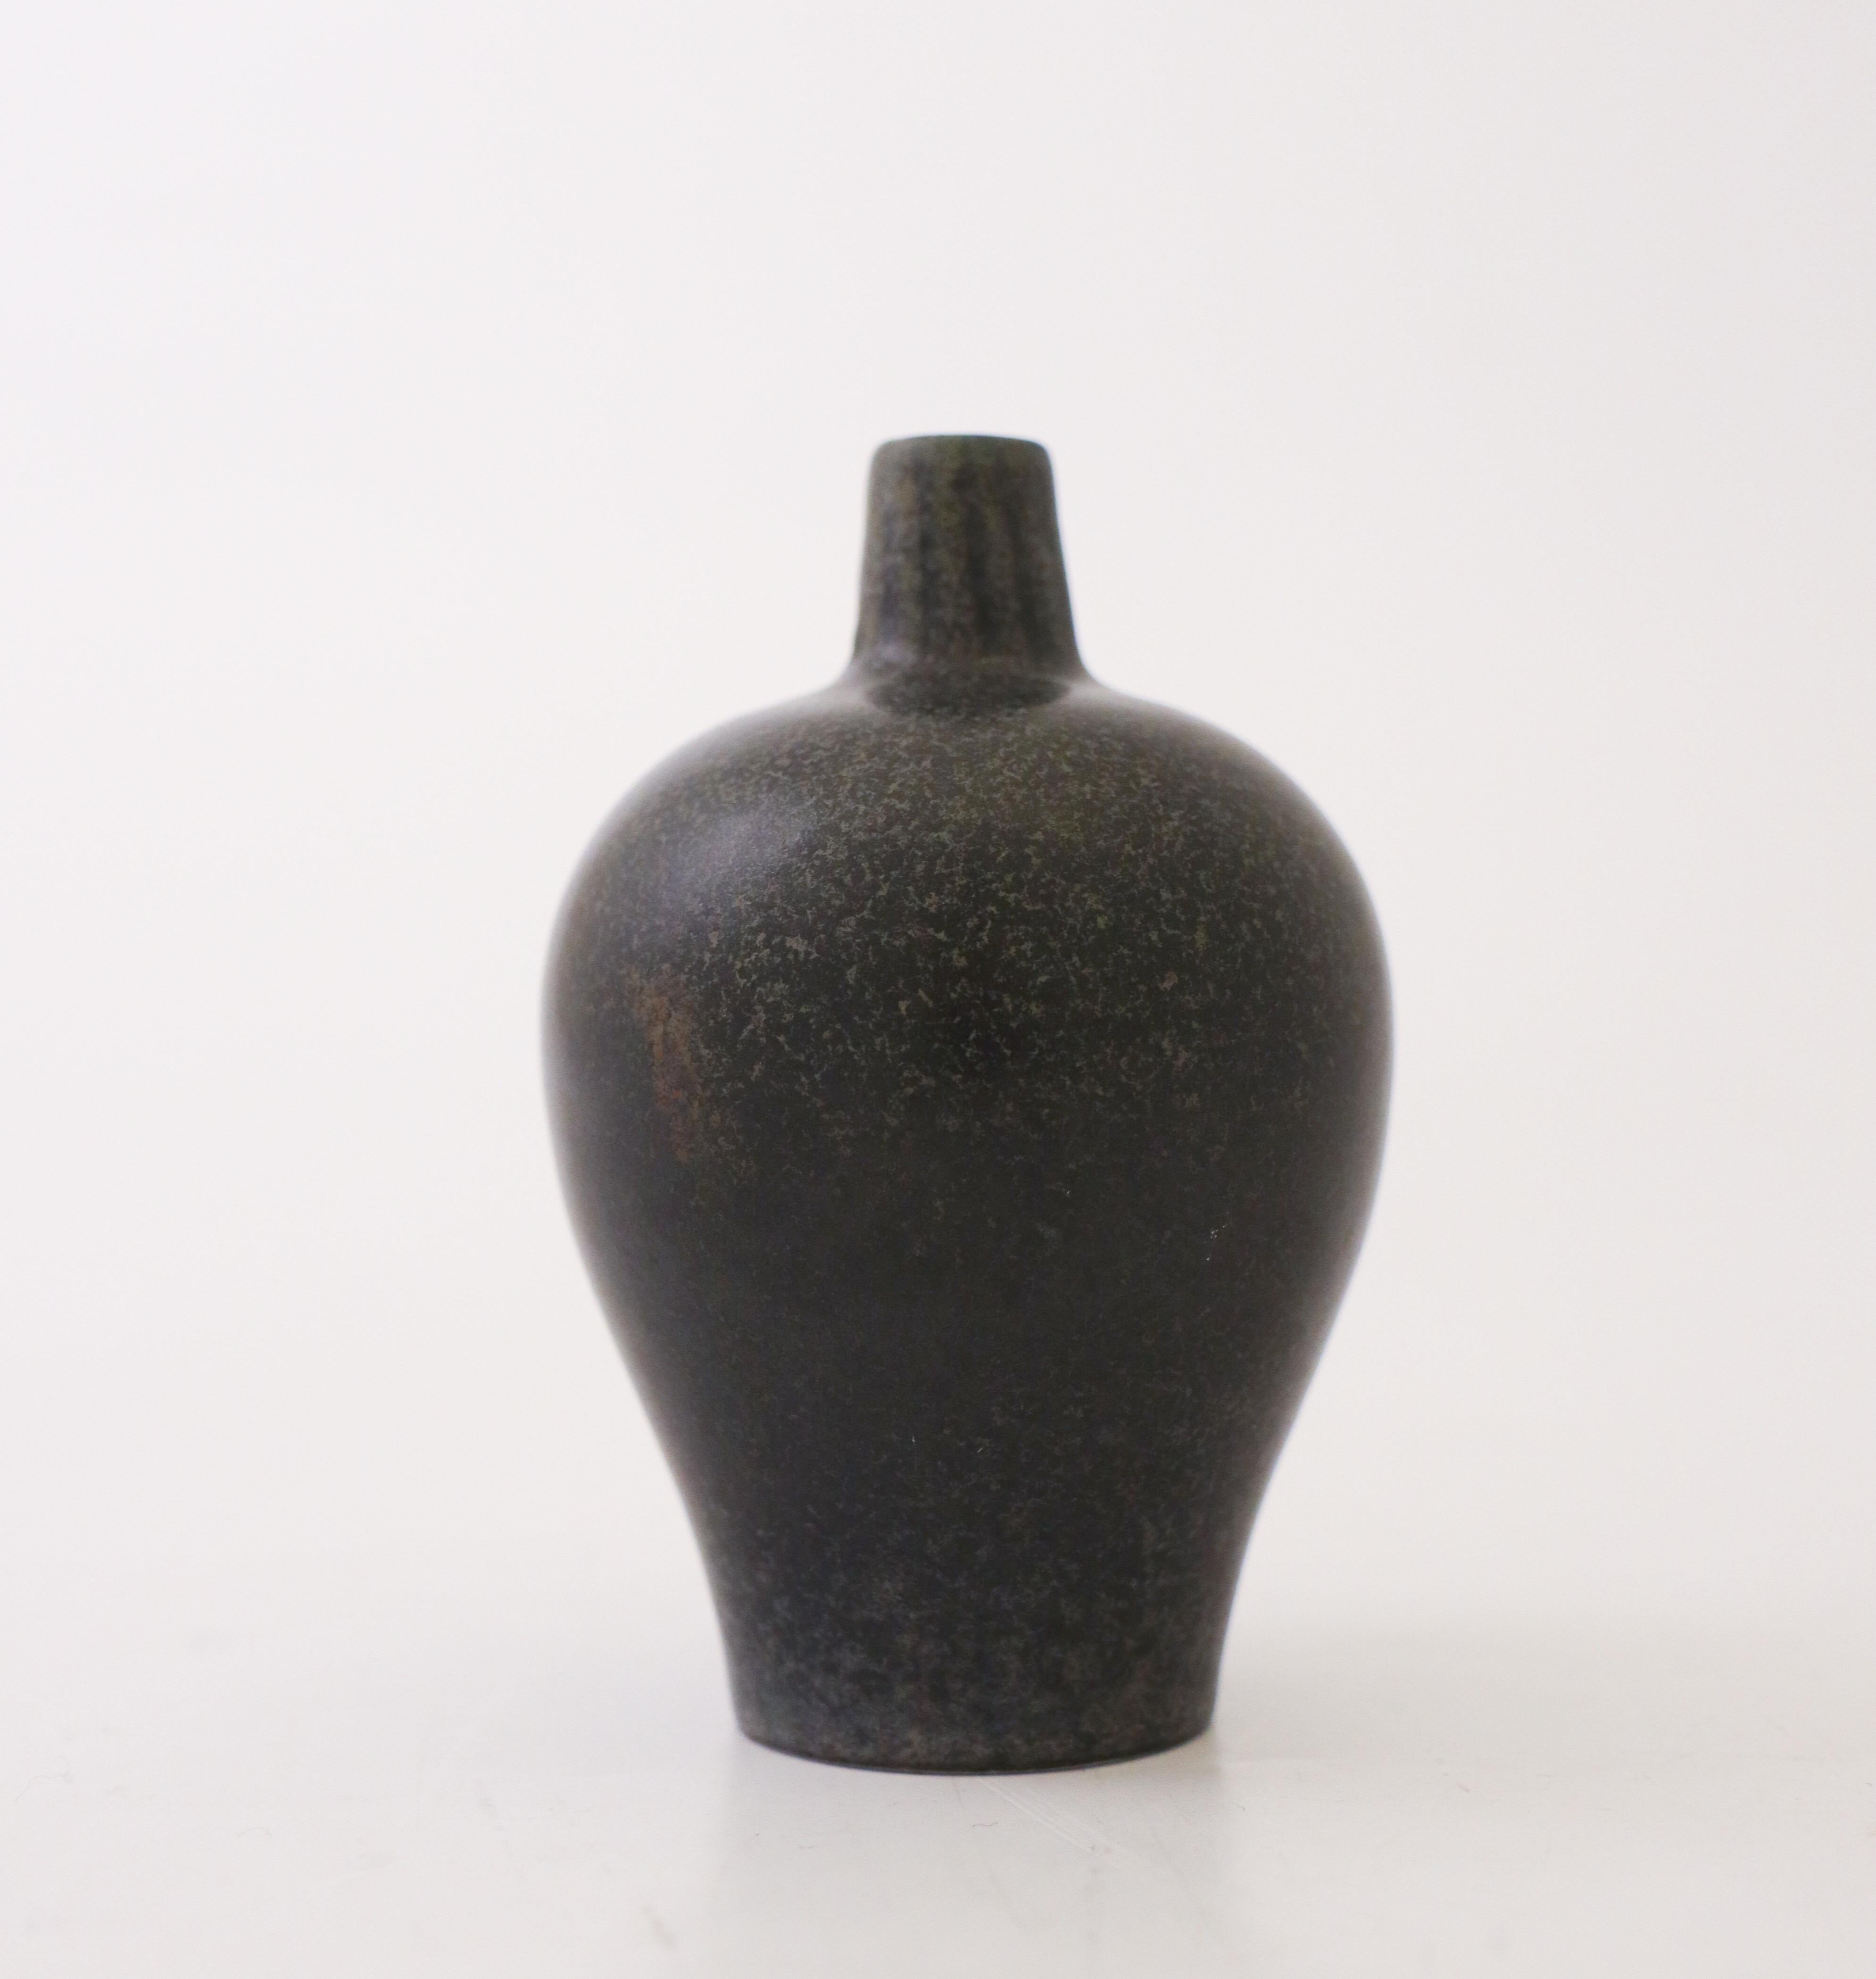 Un vase avec une belle glaçure noire, conçu par Gunnar Nylund à Rörstrand. Le vase mesure 9 cm de haut et 6 cm de diamètre. Il est en parfait état et marqué comme étant de première qualité. 

Gunnar Nylund est né à Paris en 1904 de parents